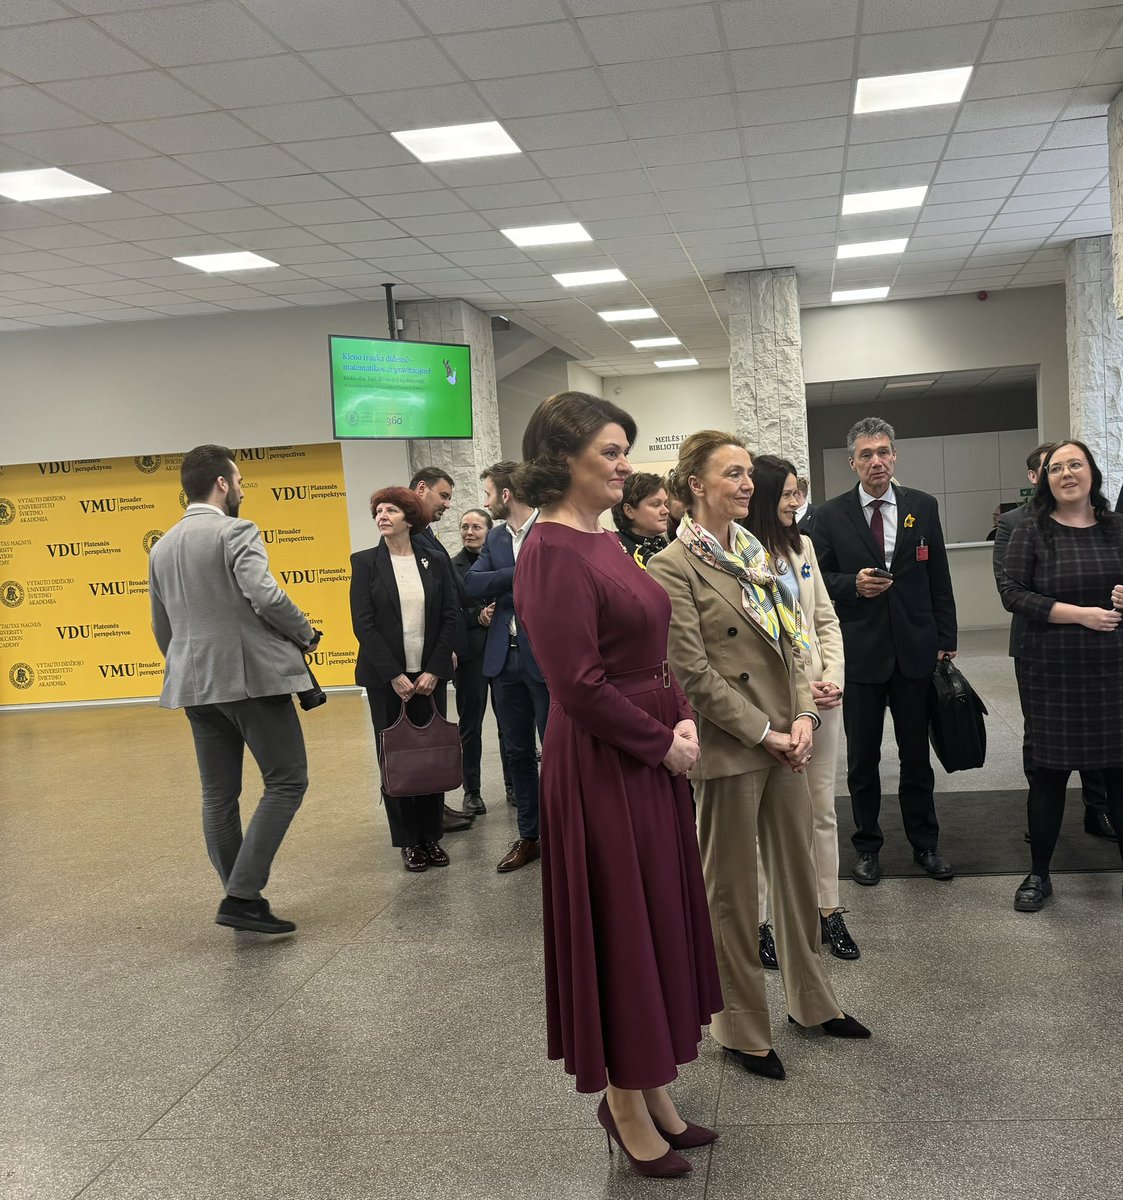 Warm thanks First Lady Diana Nausėdienė for showing us the Ukraine Centre in Vilnius today/Remerciements chaleureux à la Première Dame Diana Nausėdienė de nous avoir fait visiter le centre ukrainien à Vilnius